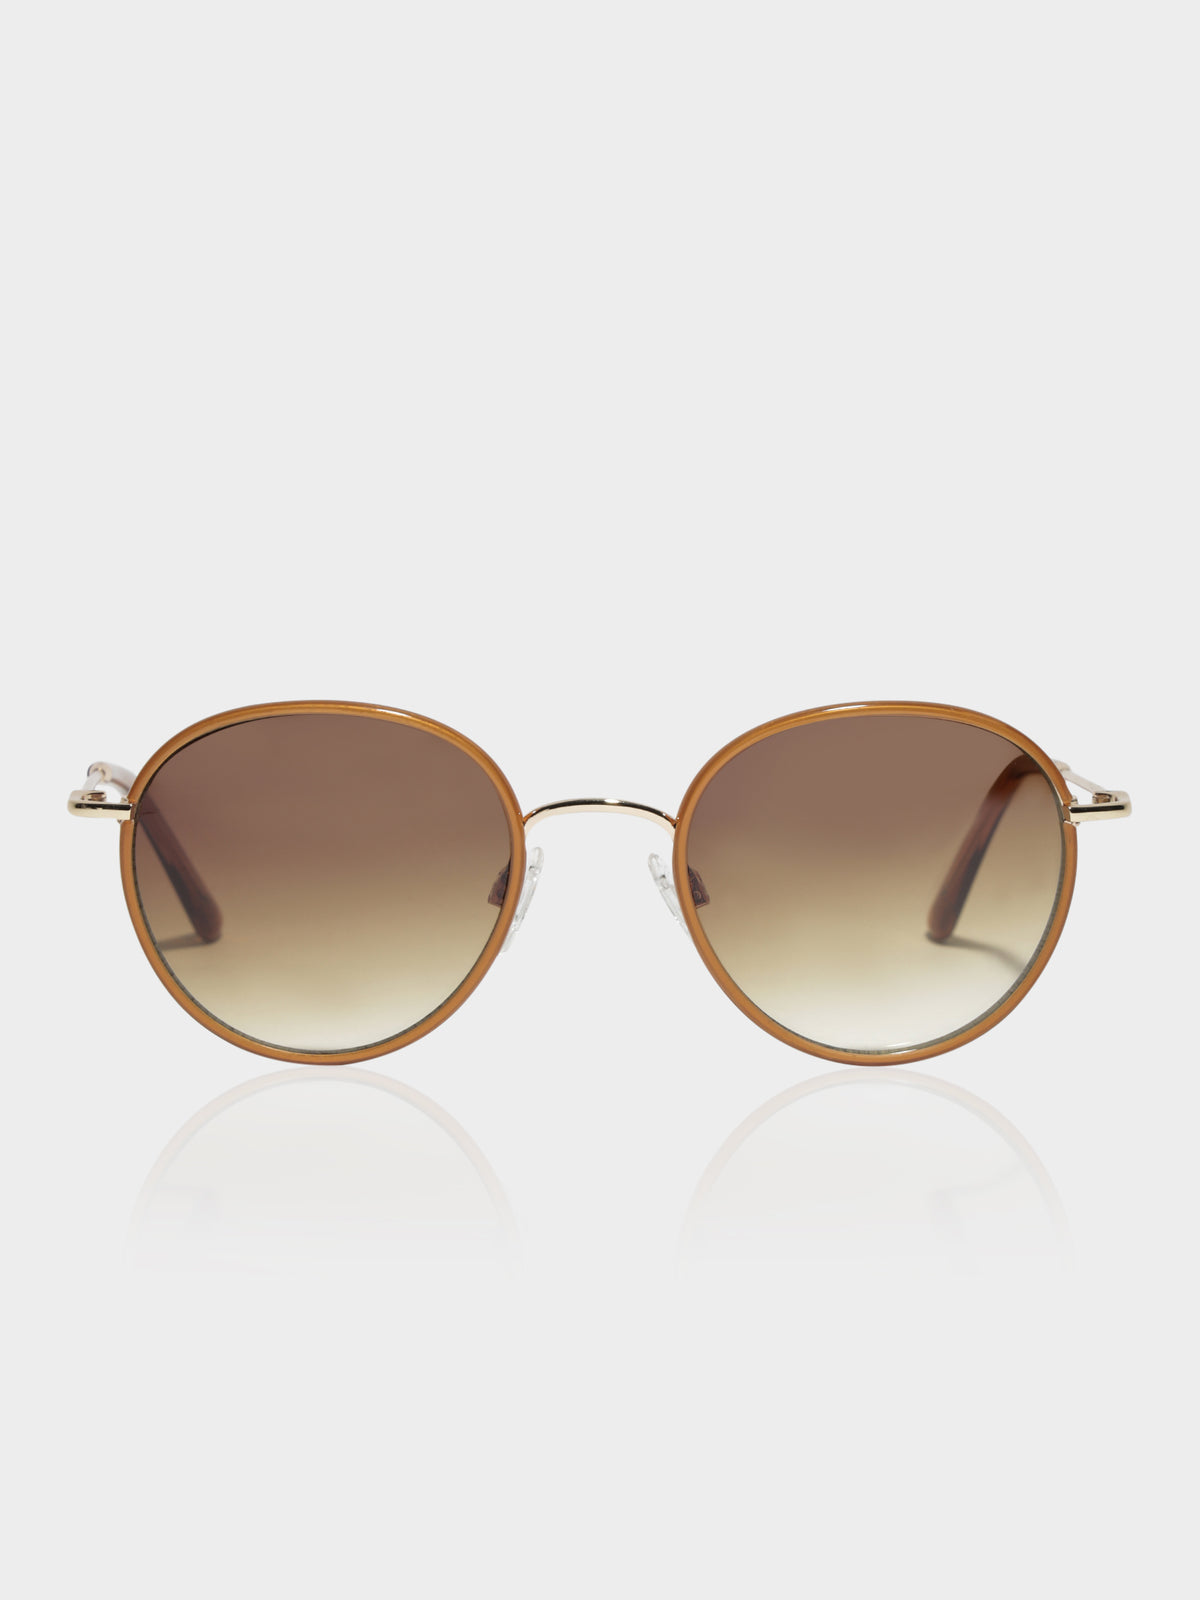 CL7816 Miami Sunglasses in Brown &amp; Gold